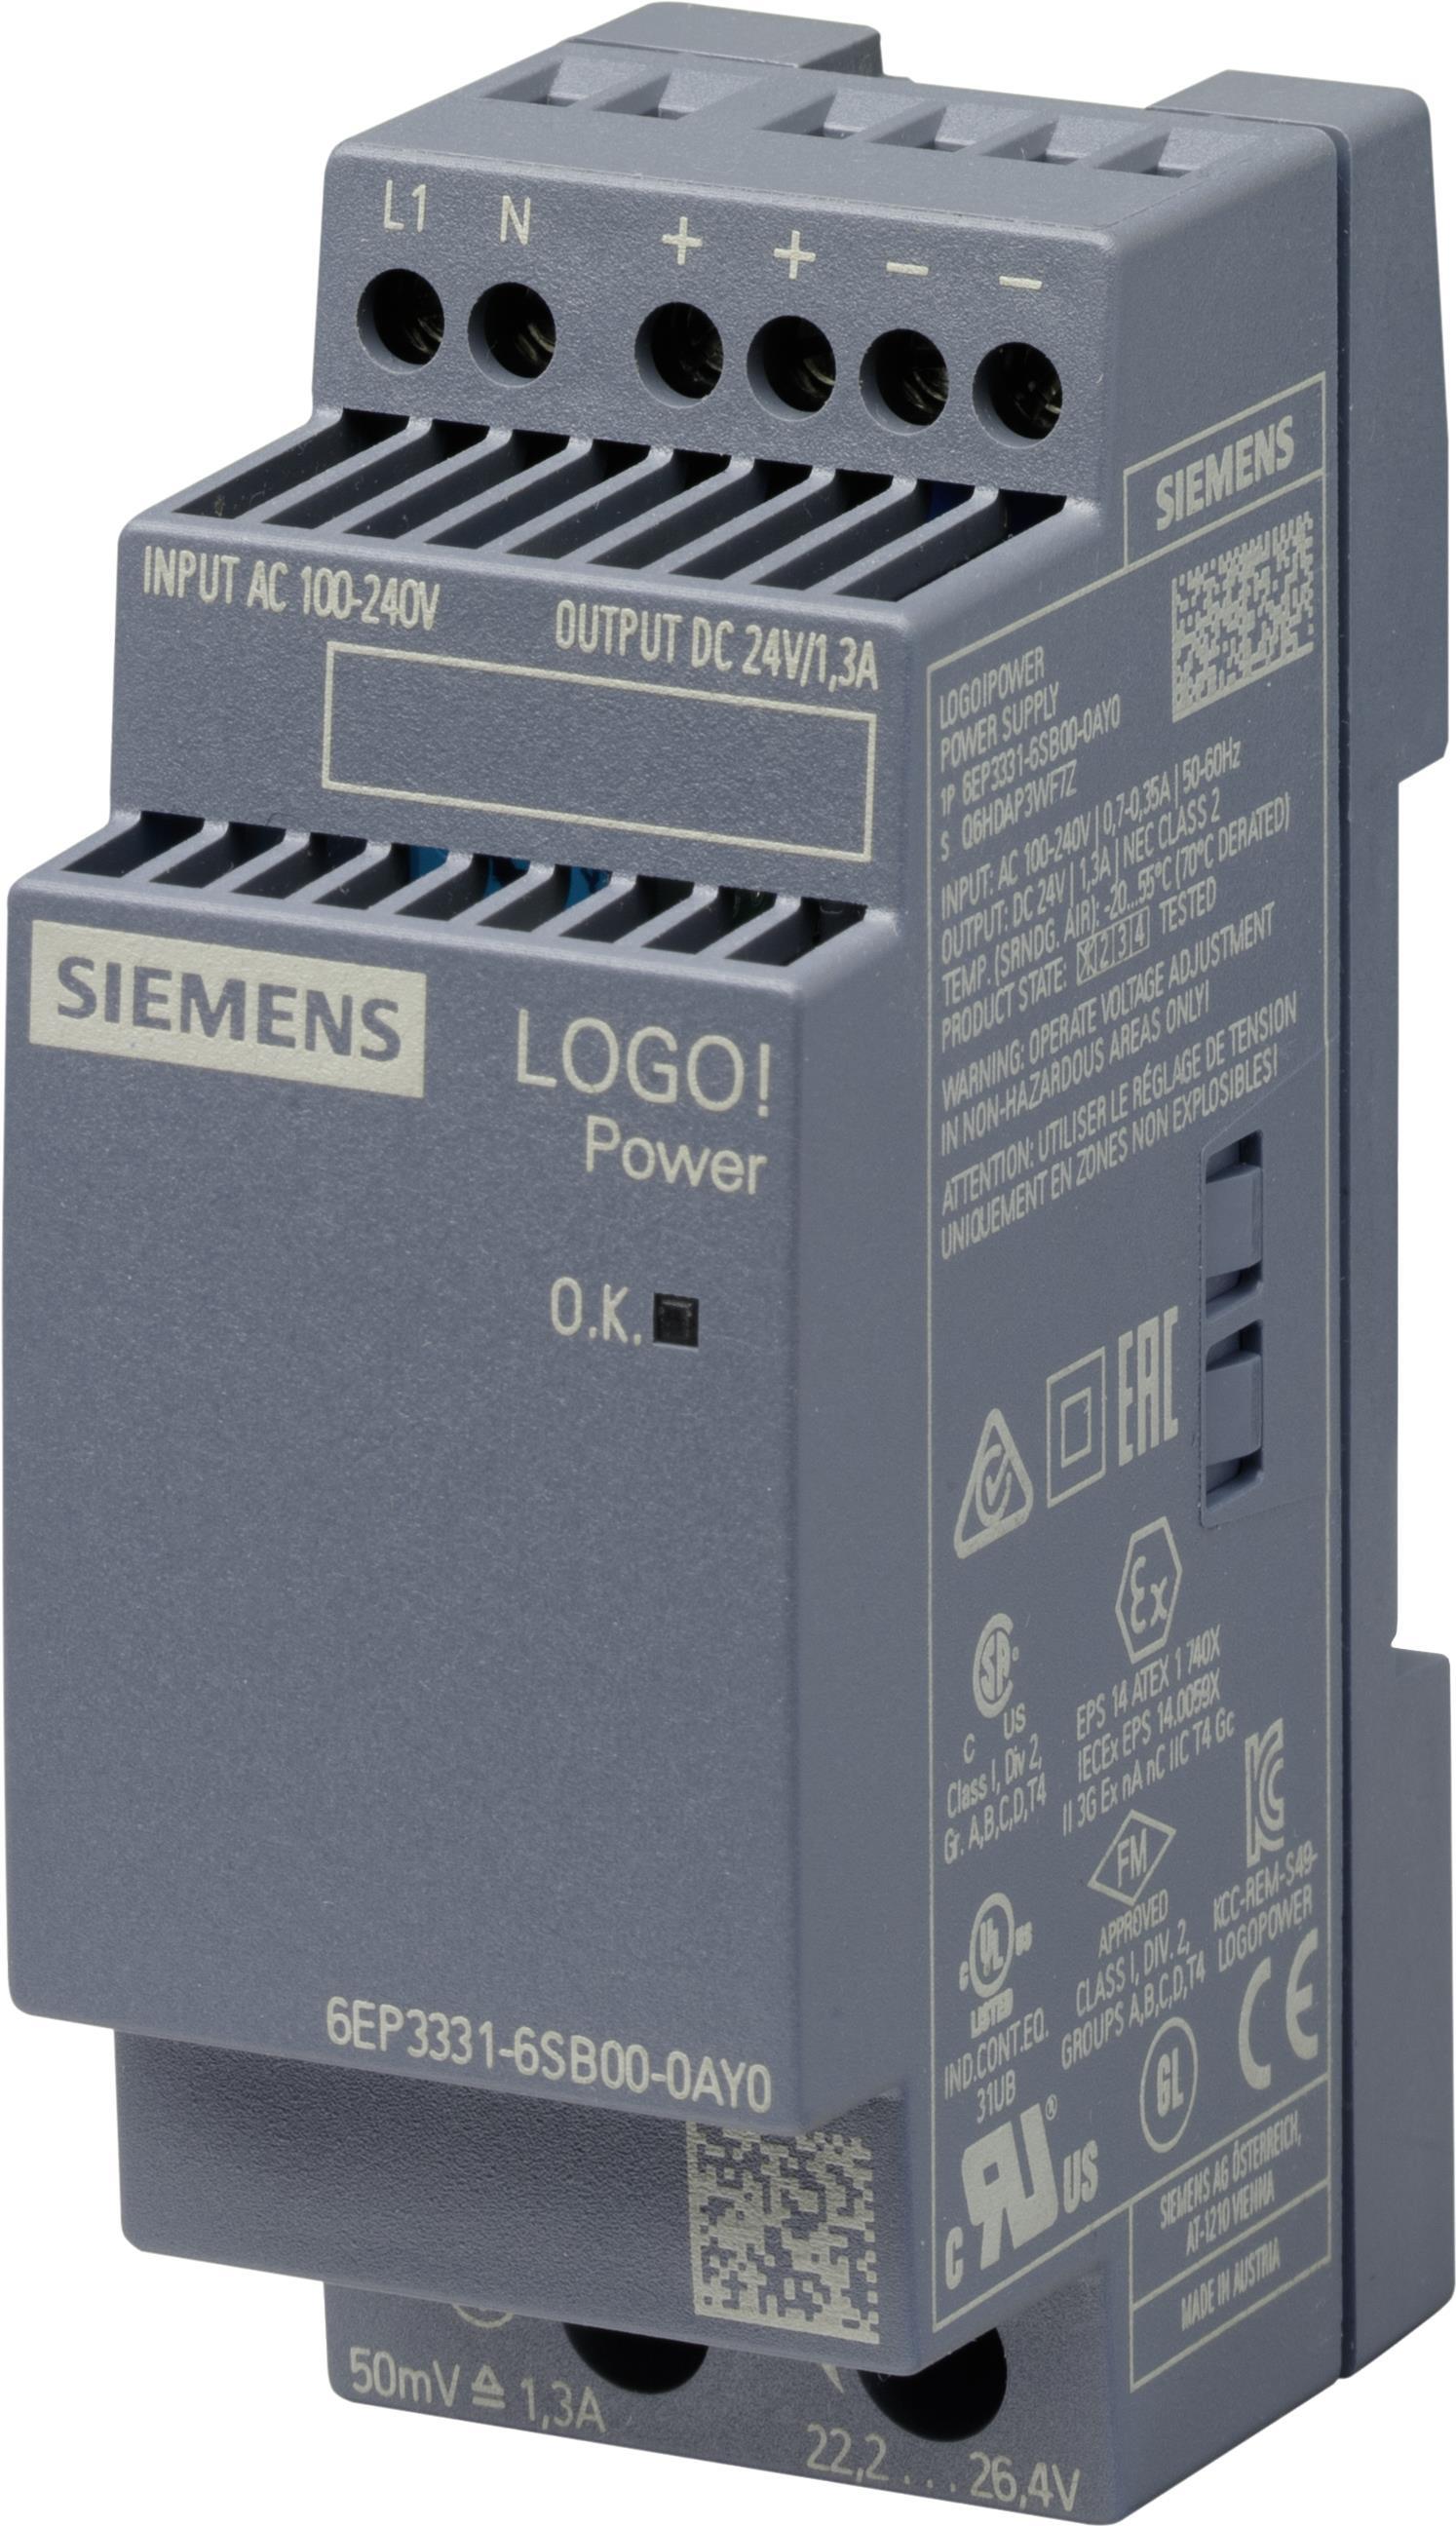 Siemens 6EP3331-6SB00-0AY0 Netzteil & Spannungsumwandler Indoor Mehrfarbig (6EP3331-6SB00-0AY0) von Siemens